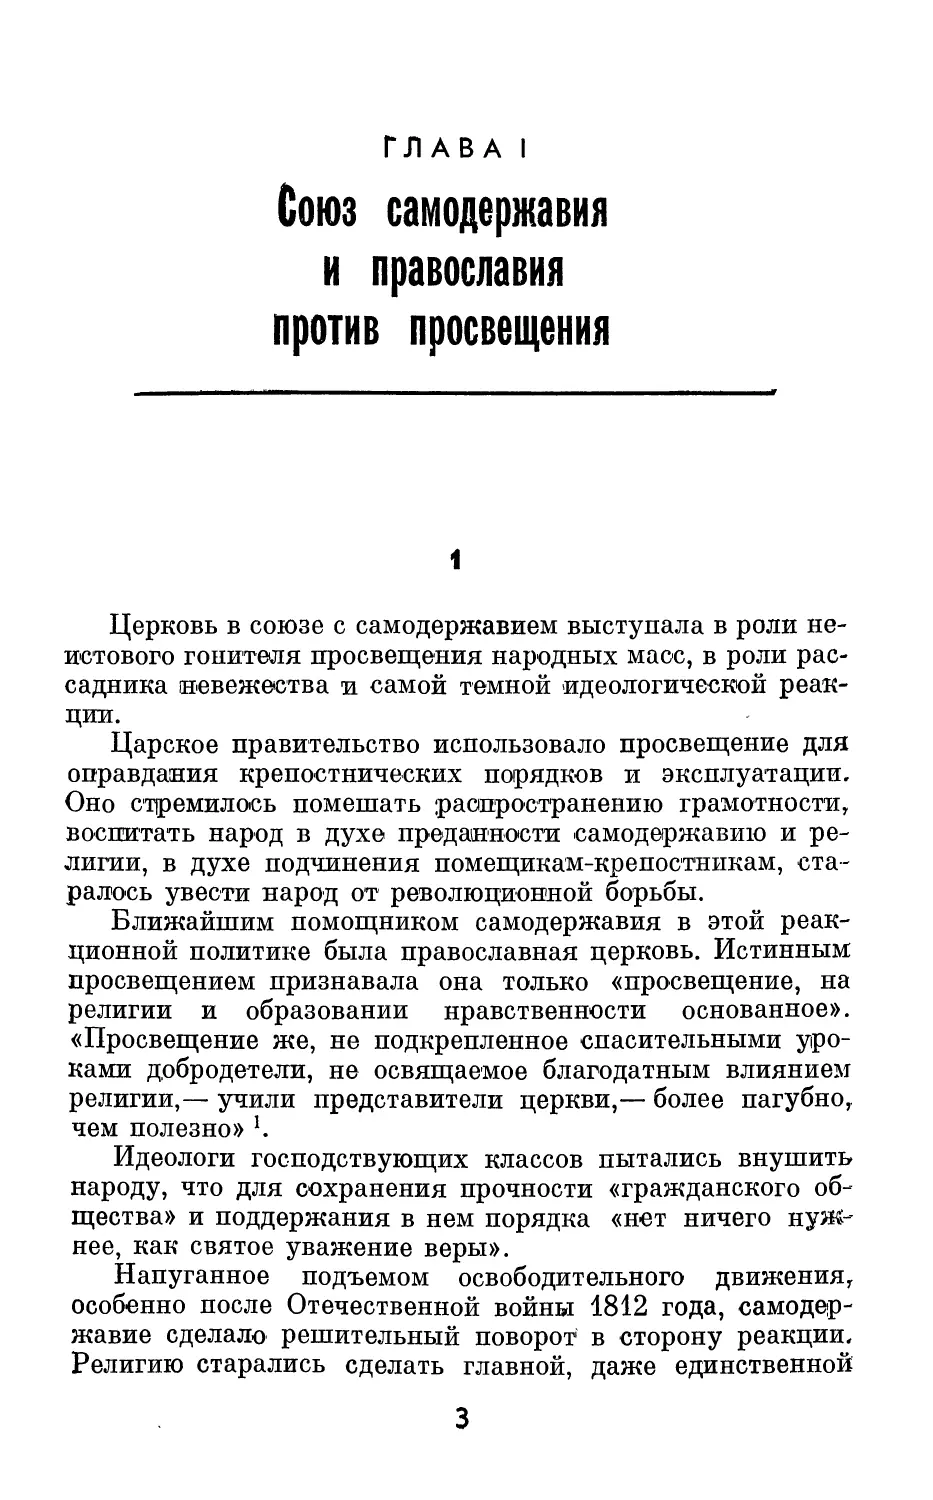 Глава 1. Союз самодержавия и православия против просвещения